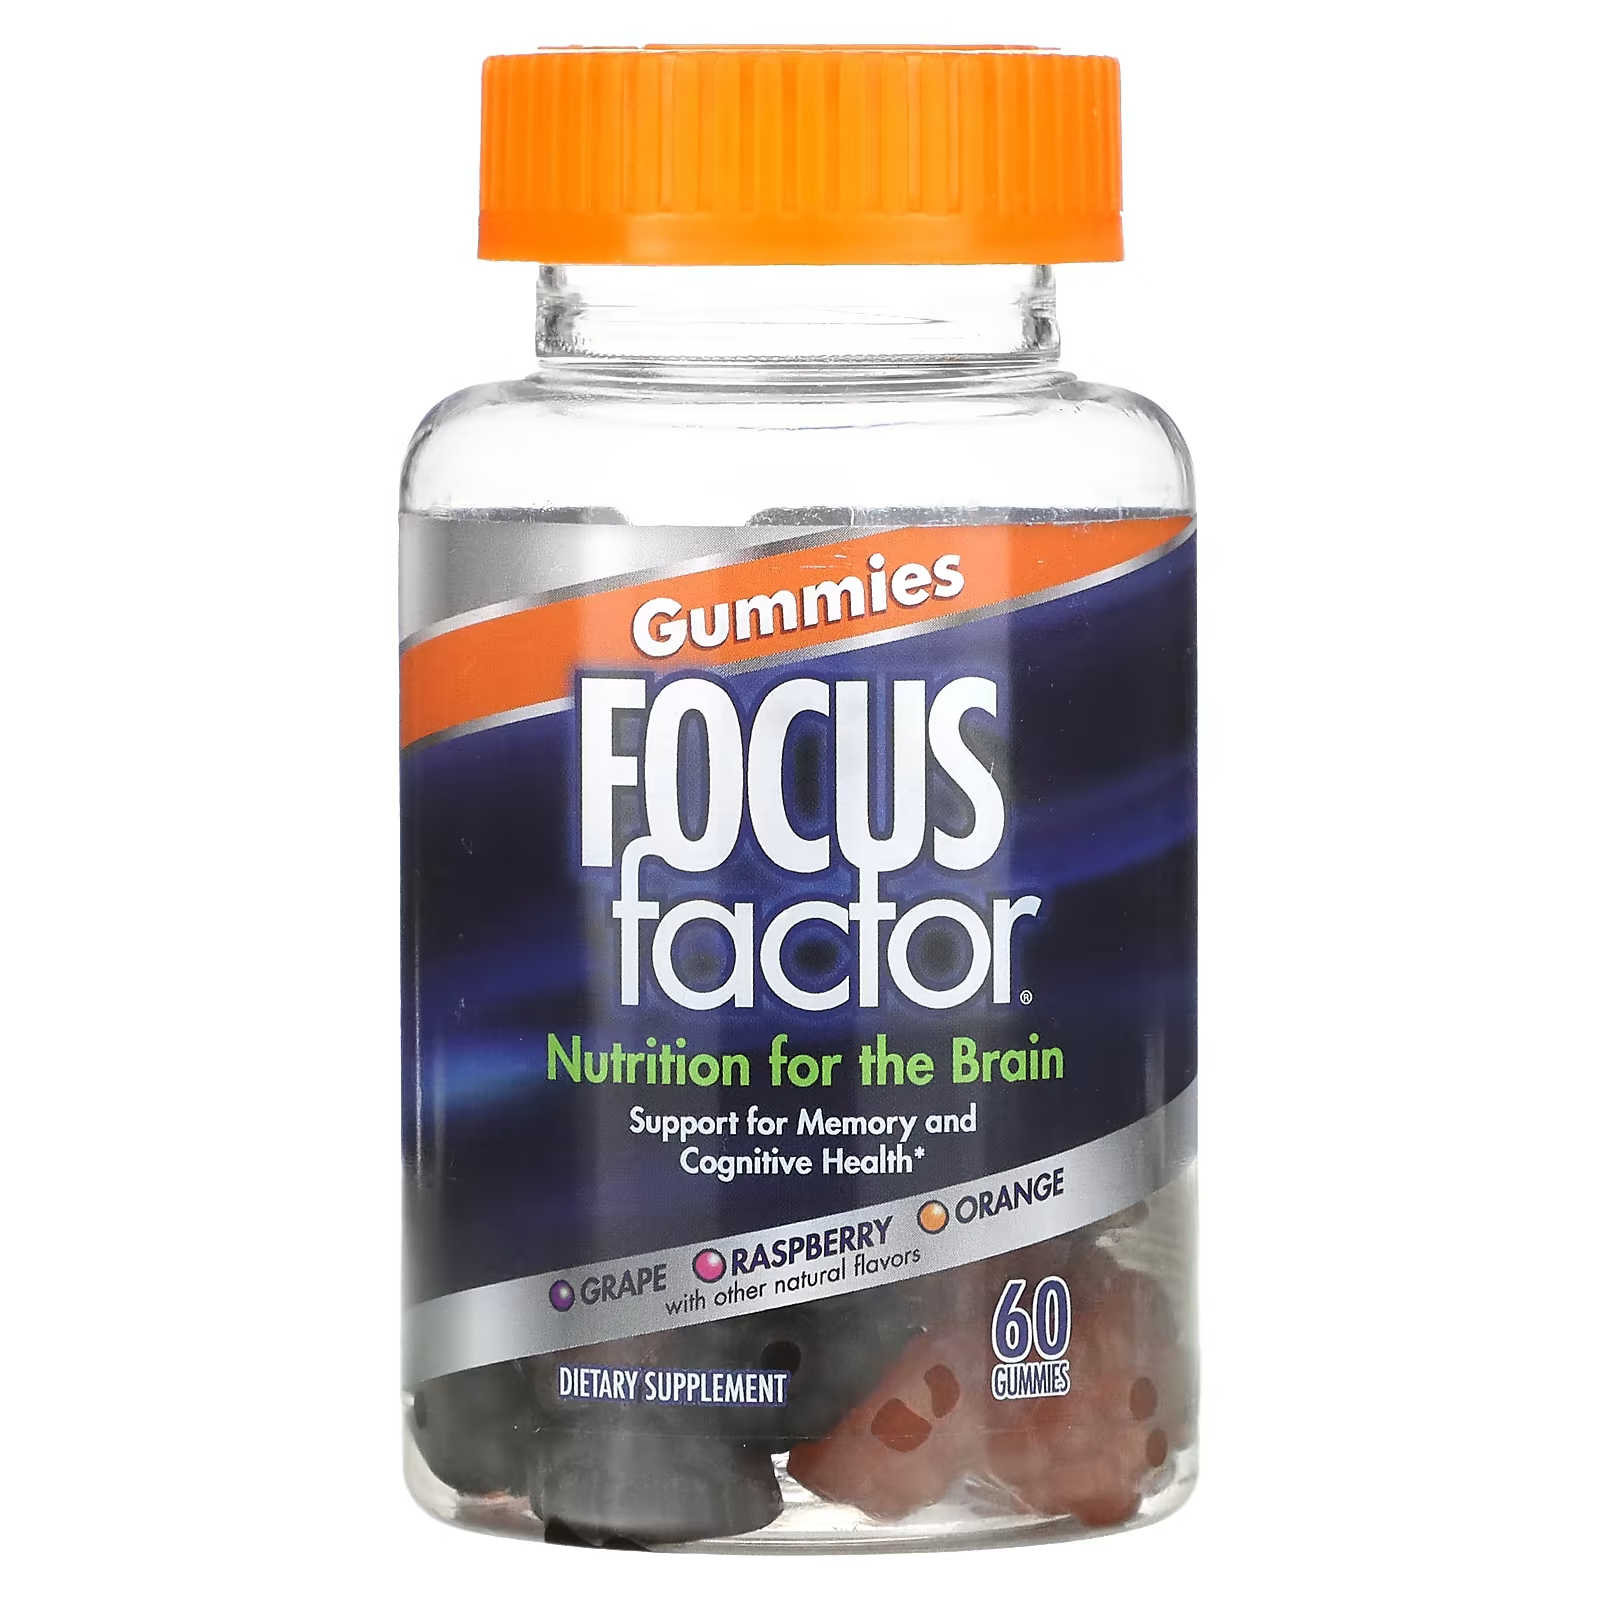 Пищевая добавка Focus Factor Nutrition For The Brain виноград, малина, апельсин, 60 жевательных таблеток focus factor brain